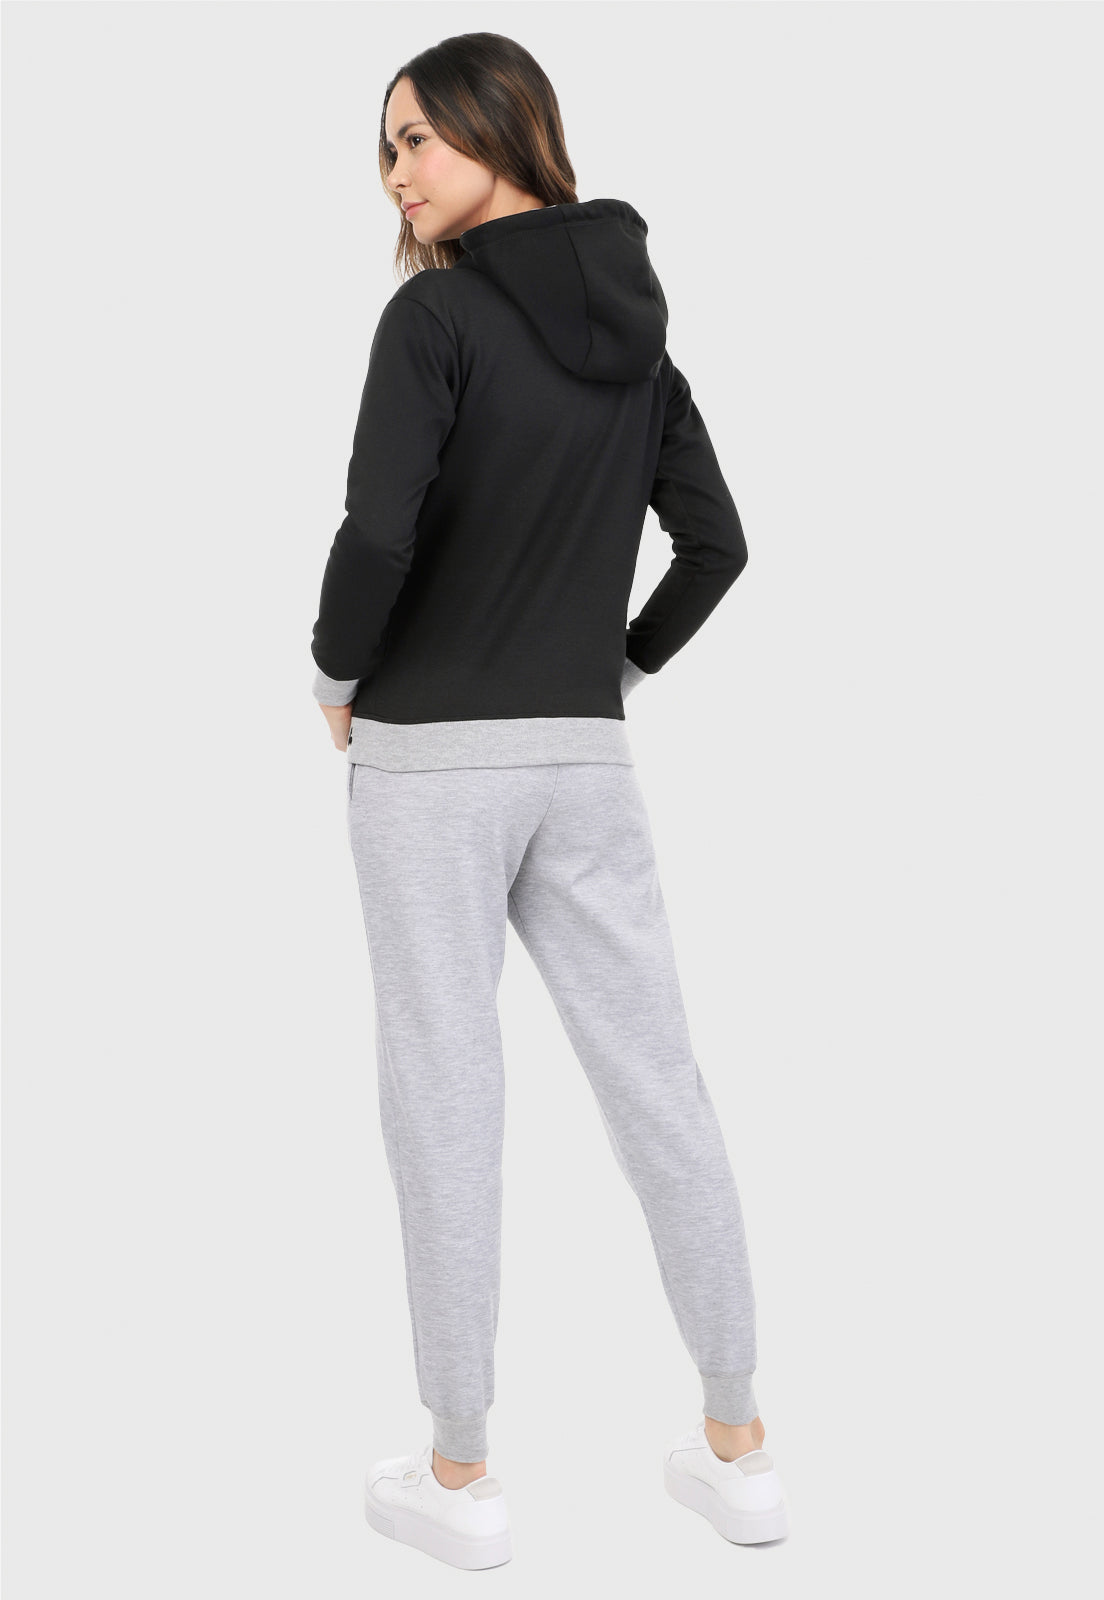 Mujer de espalda vistiendo la sudadera para mujer conjunto buzo hoodie color negro con corazón brillante y pantalón de sudadera gris.